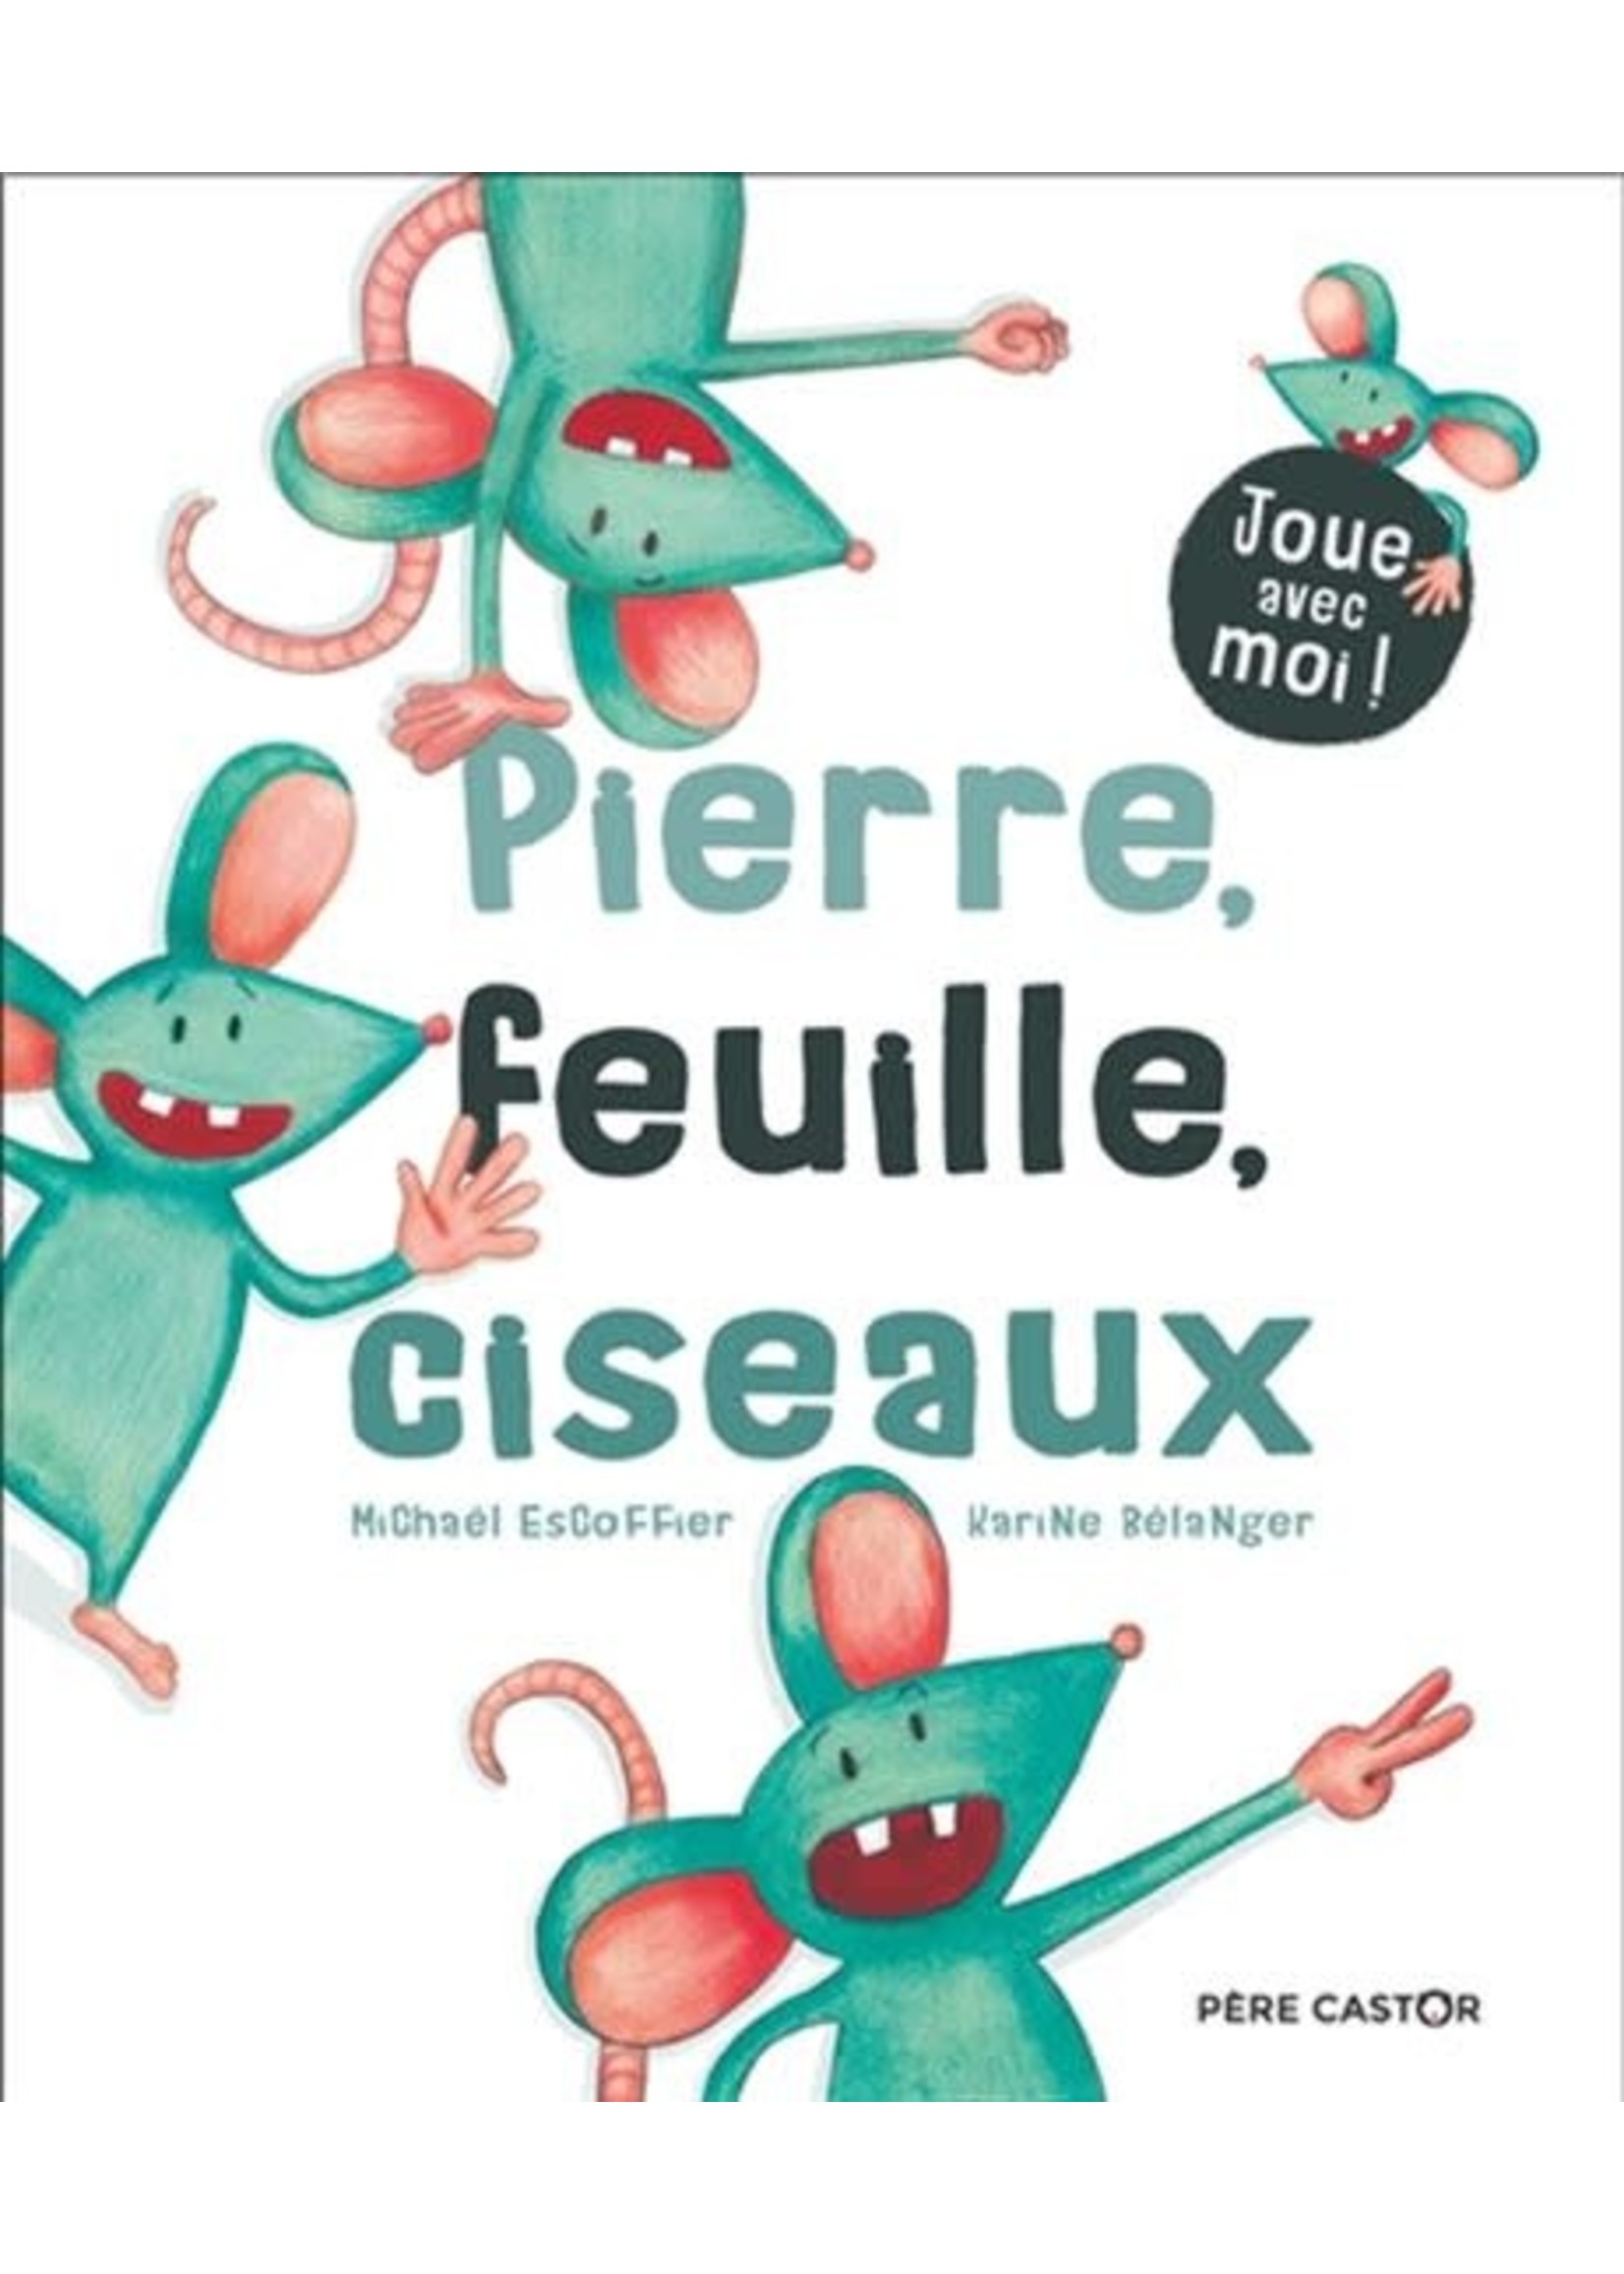 Pierre, feuille, ciseaux by Michaël Escoffier, Karine Bélanger